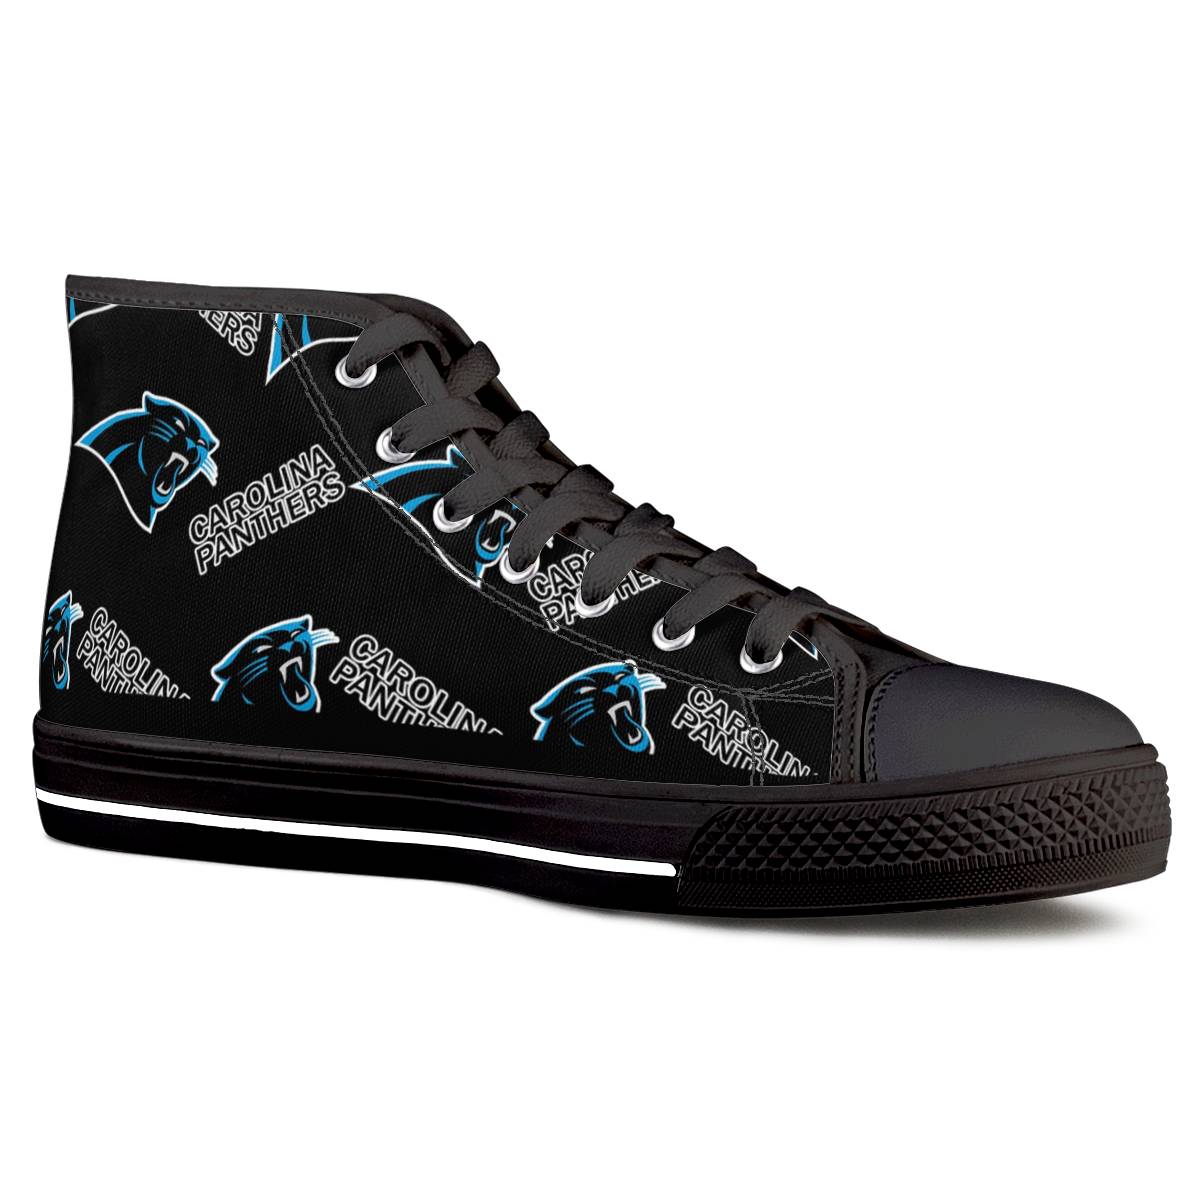 Men's Carolina Panthers High Top Canvas Sneakers 002